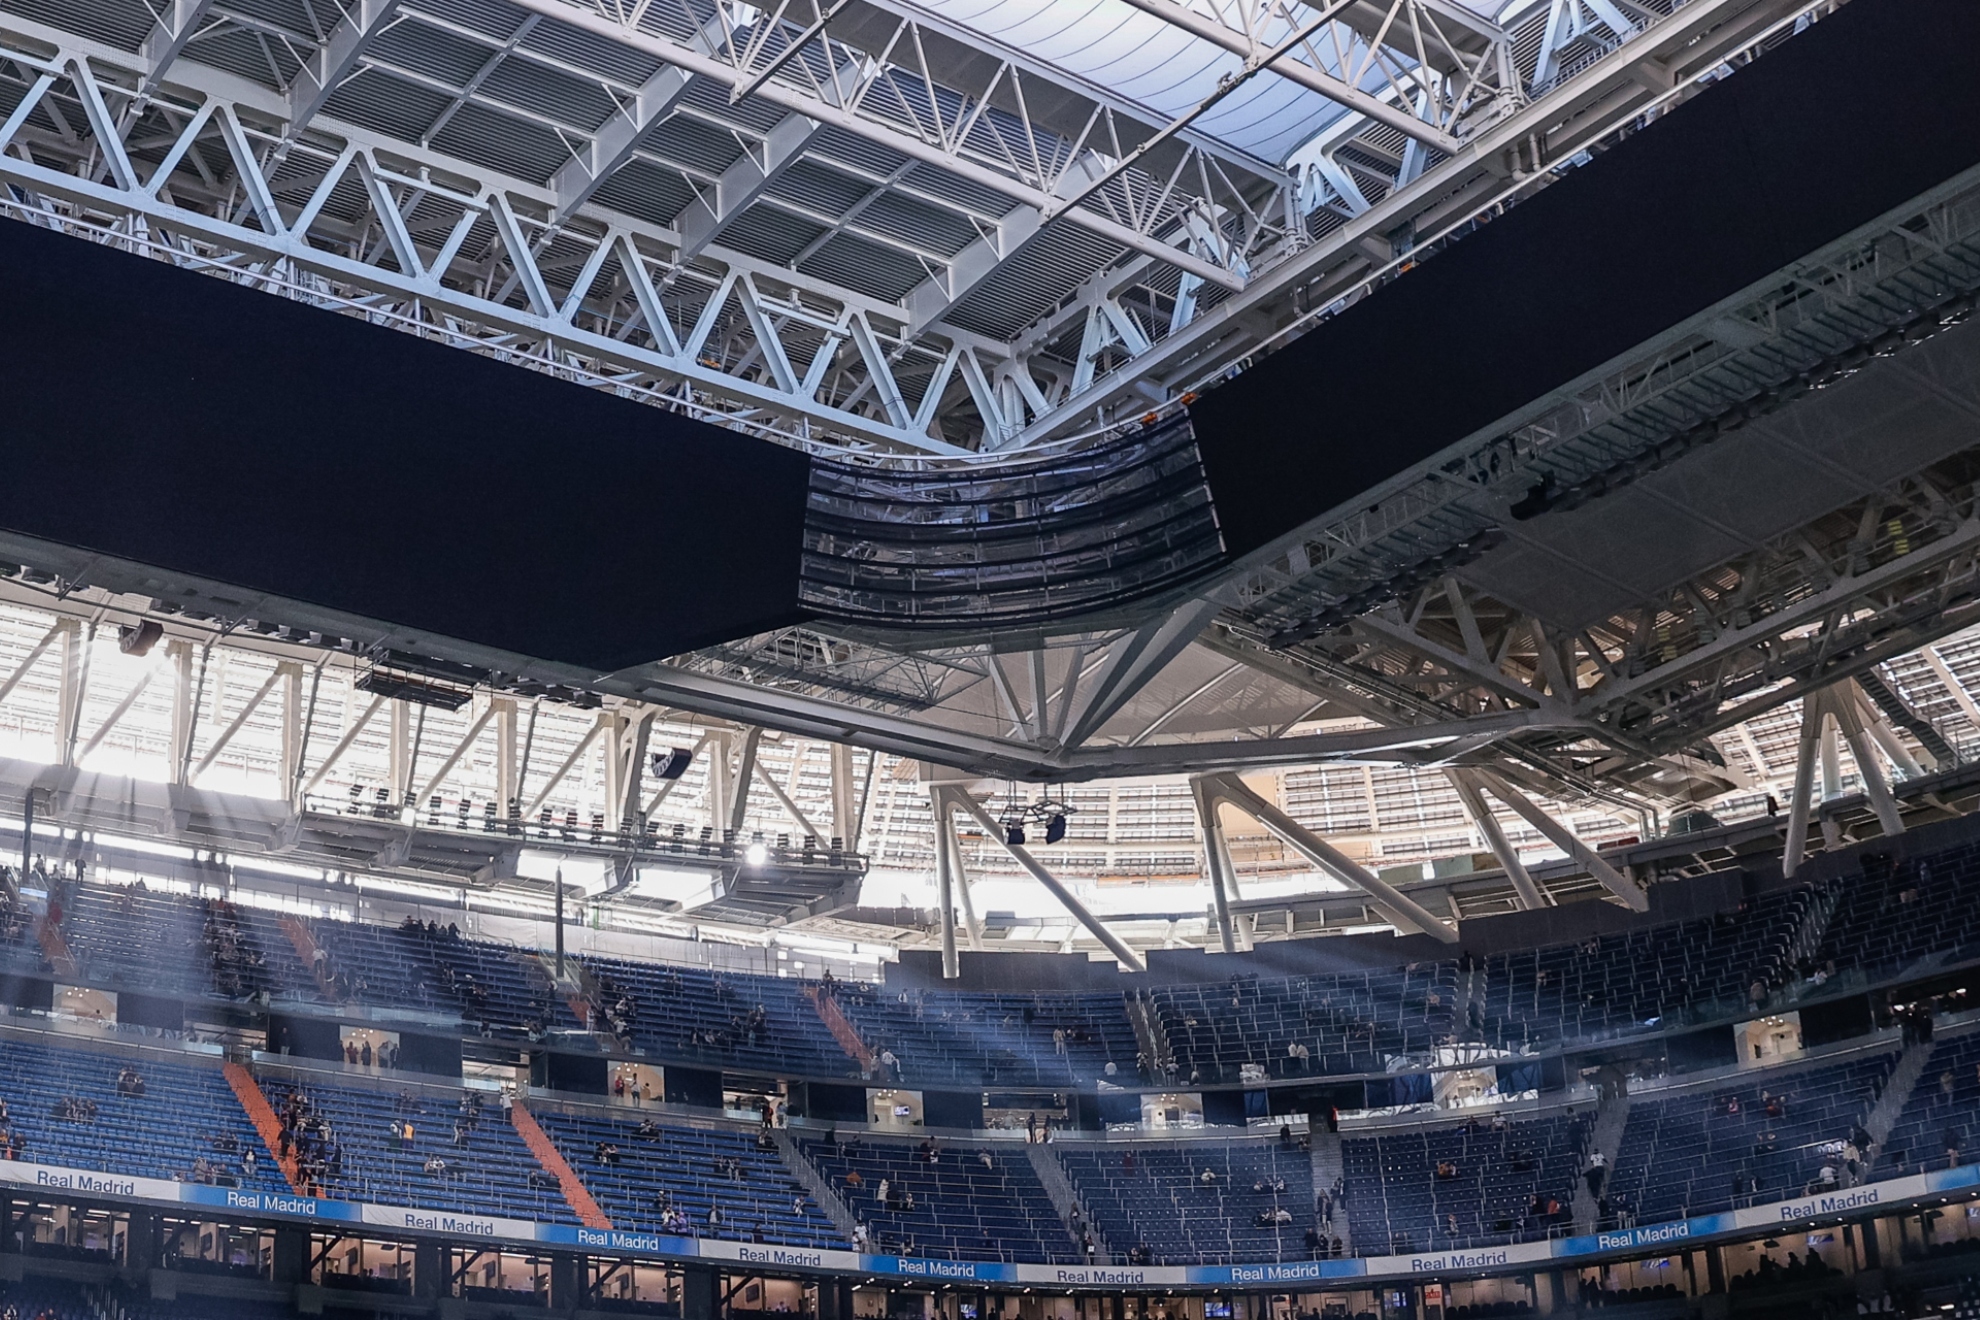 Extrañeza en el Atlético por jugar hoy con el techo cubierto del Bernabéu